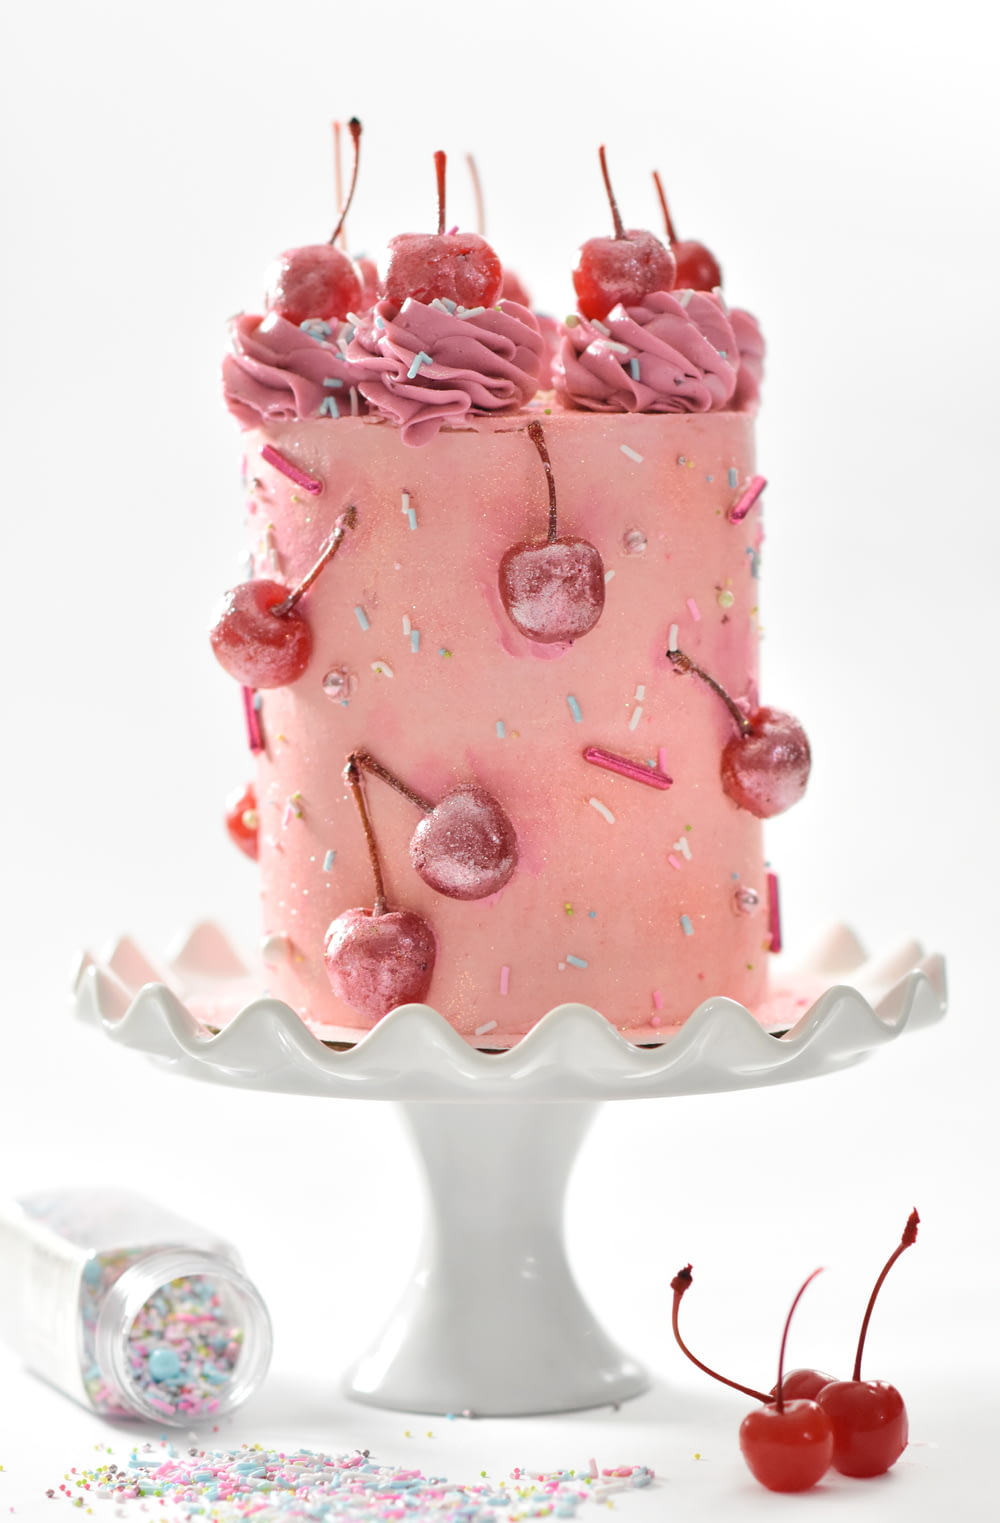 흰 발 케이크 트레이에 핑크 체리 케이크